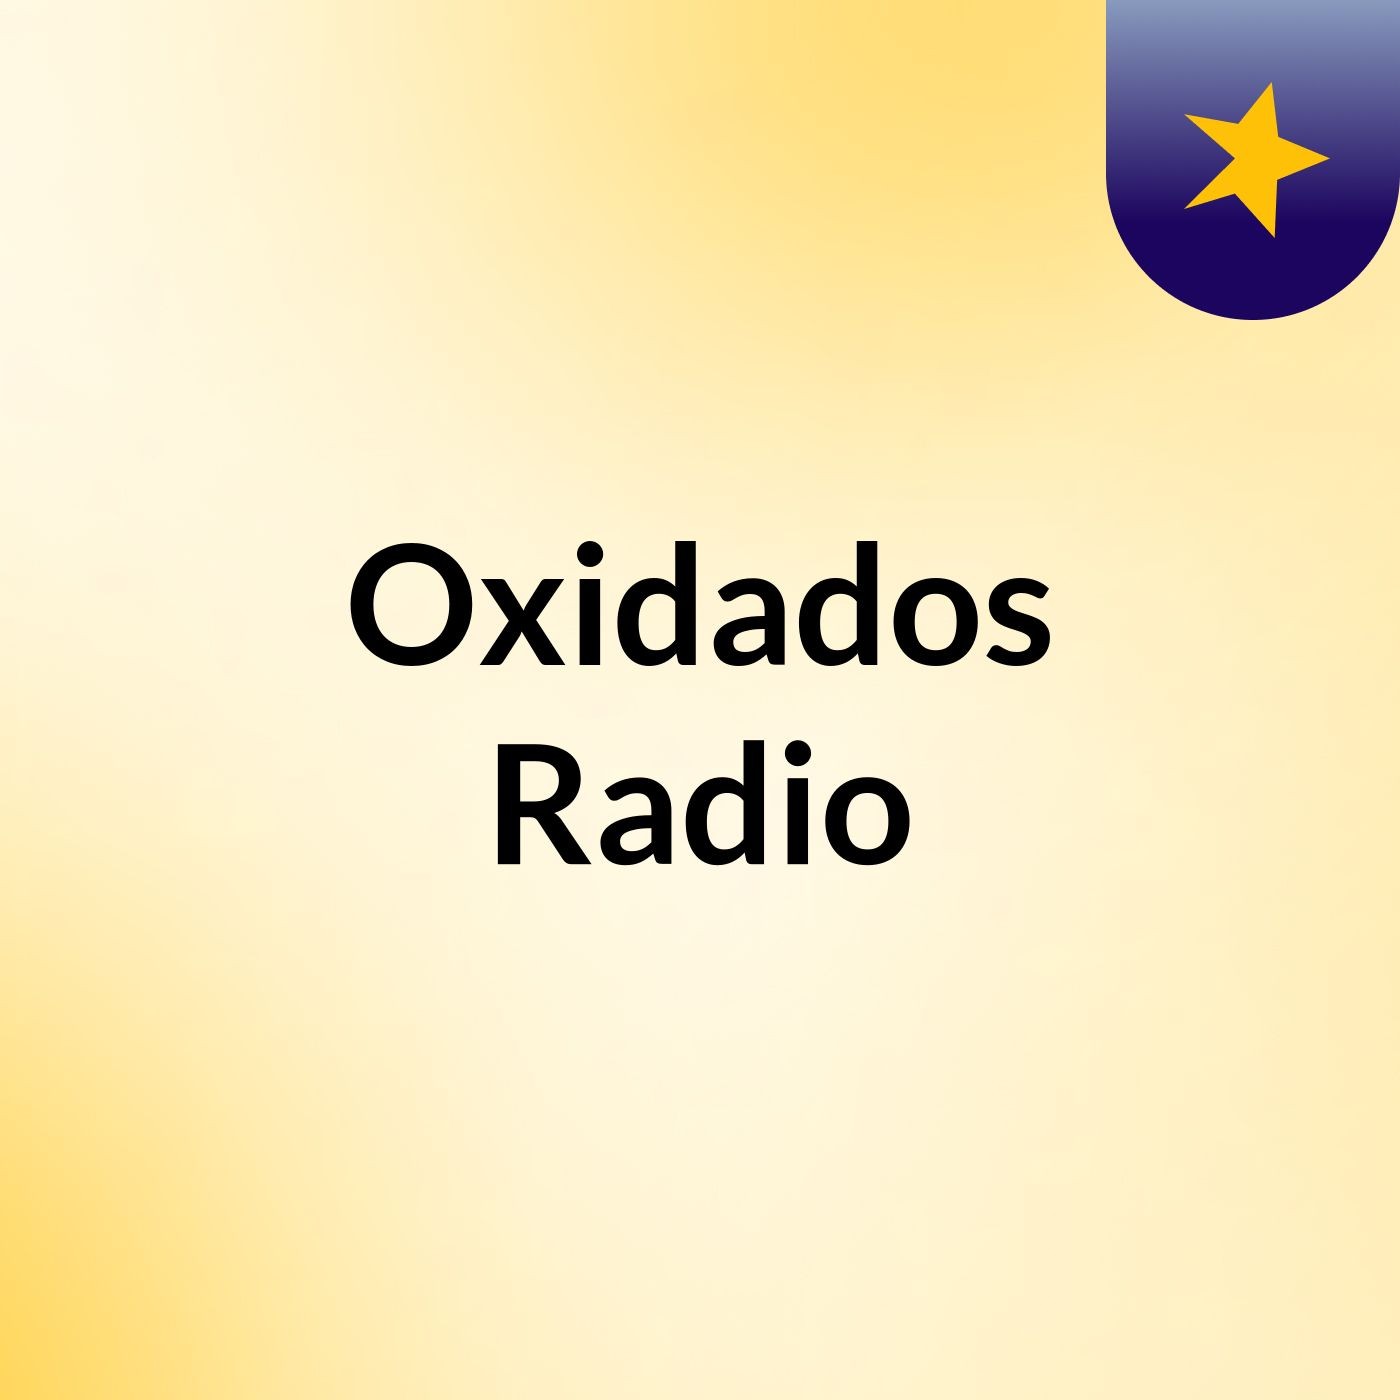 Oxidados Radio